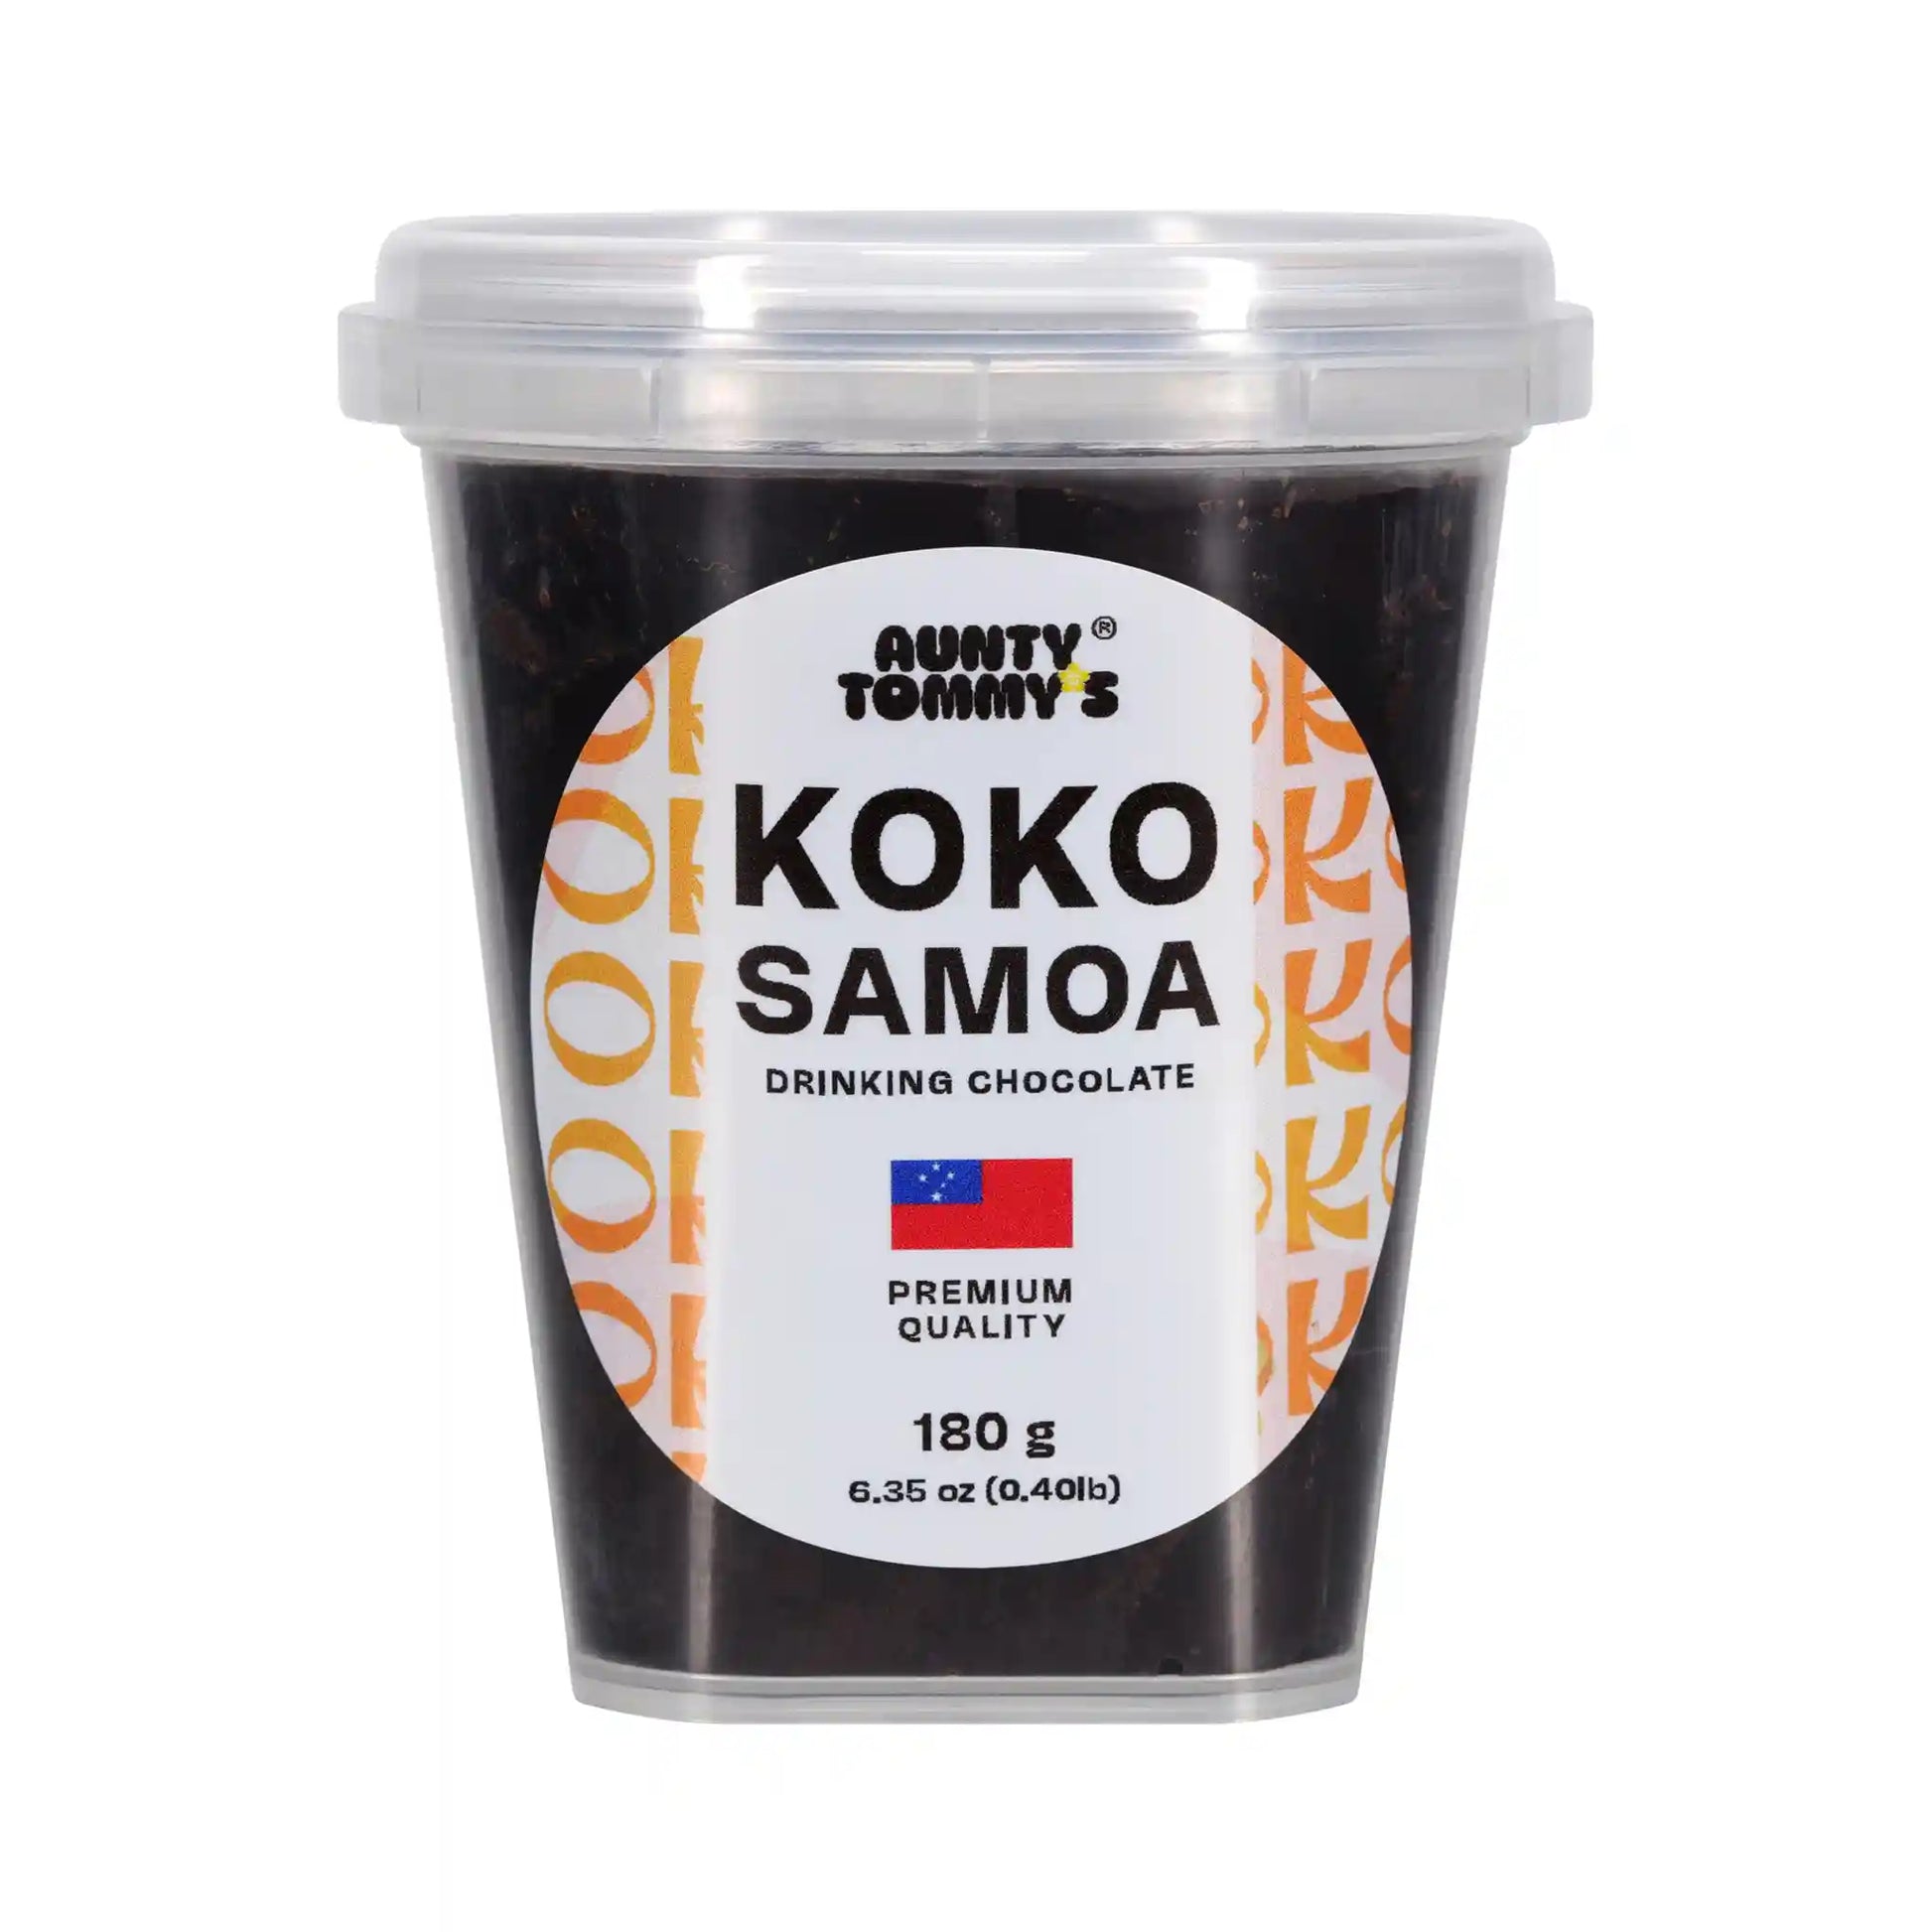 Koko Samoa Drinking Chocolate Block container 2